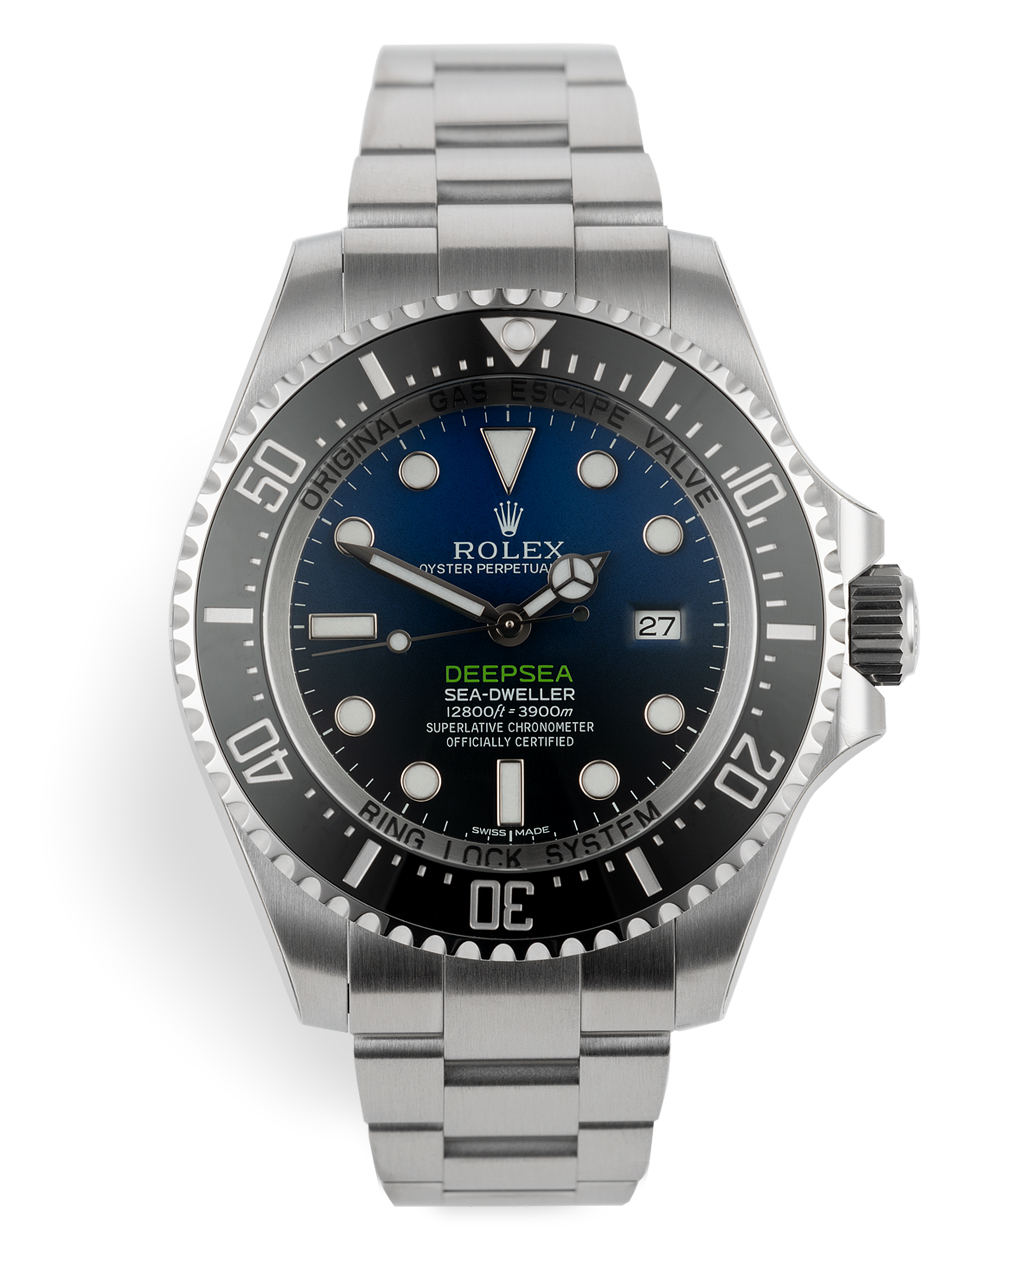 Rolex Deepsea Watches | ref 116660 | Rolex Warranty to 2020 | Watch